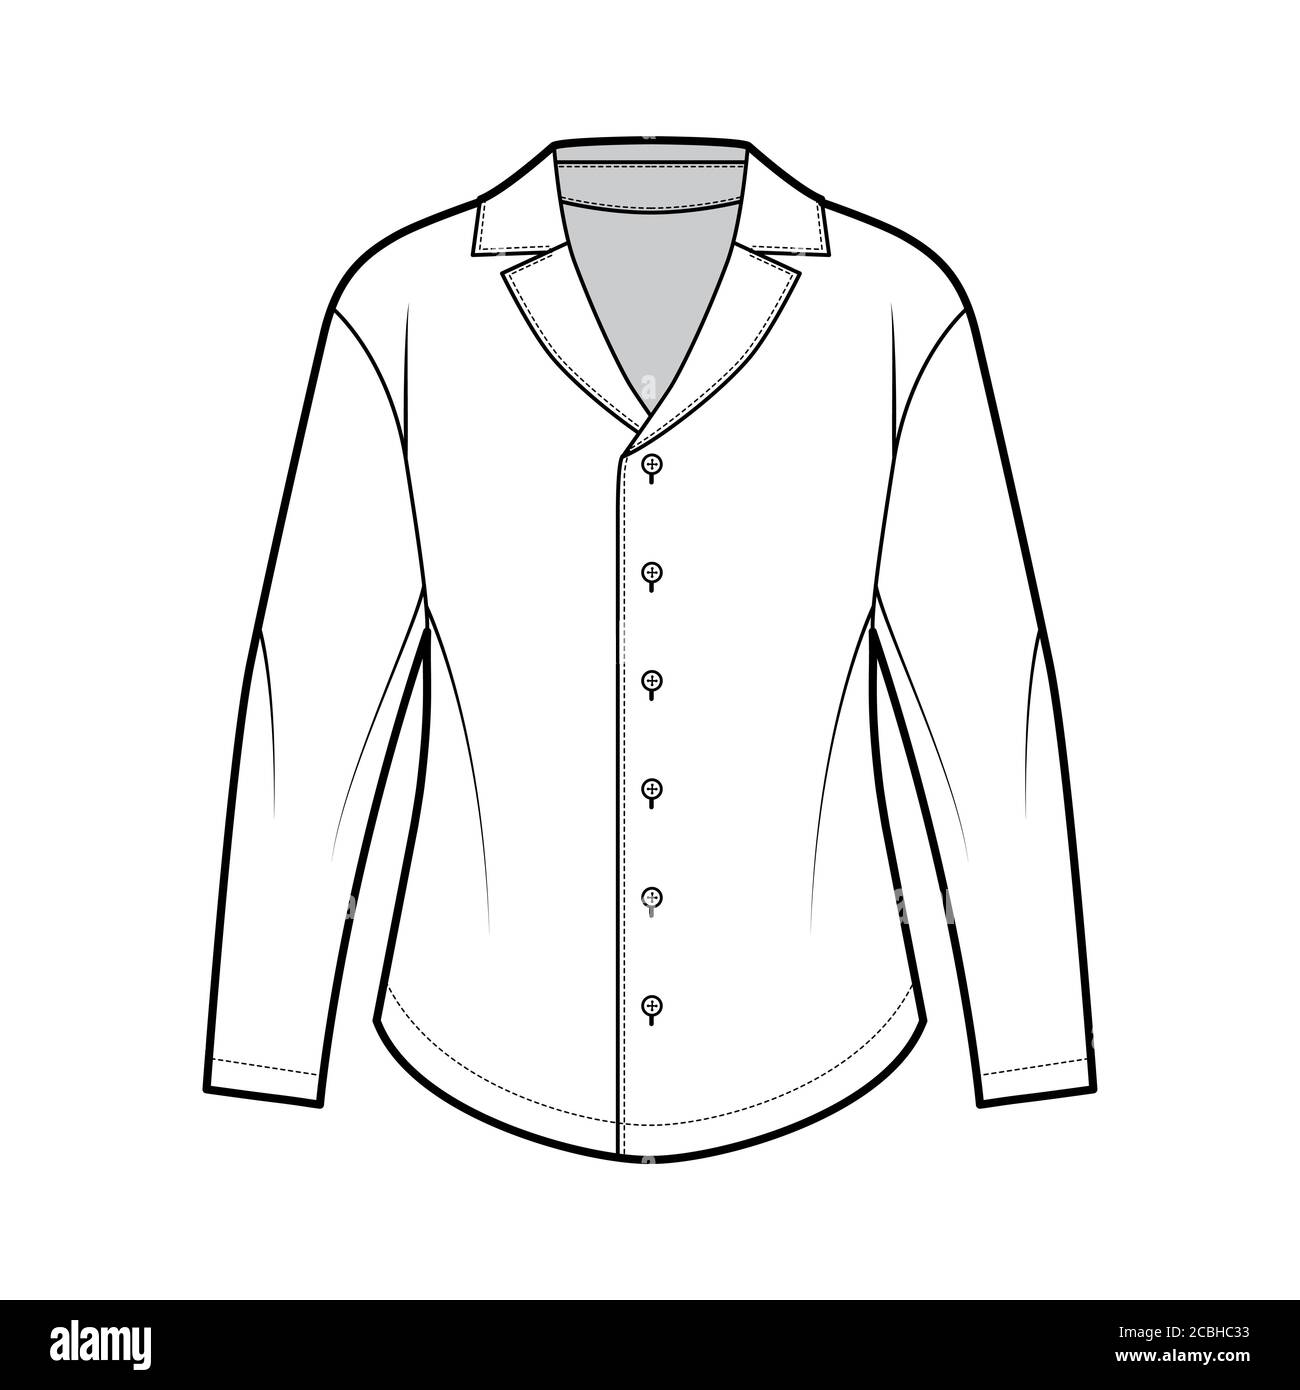 Chemise technique de mode avec silhouette décontractée, col de camp rétro,  empiècement rond à l'arrière, boutons d'attache sur le devant, manches  longues. Modèle de vêtement plat sur le devant de couleur blanche.